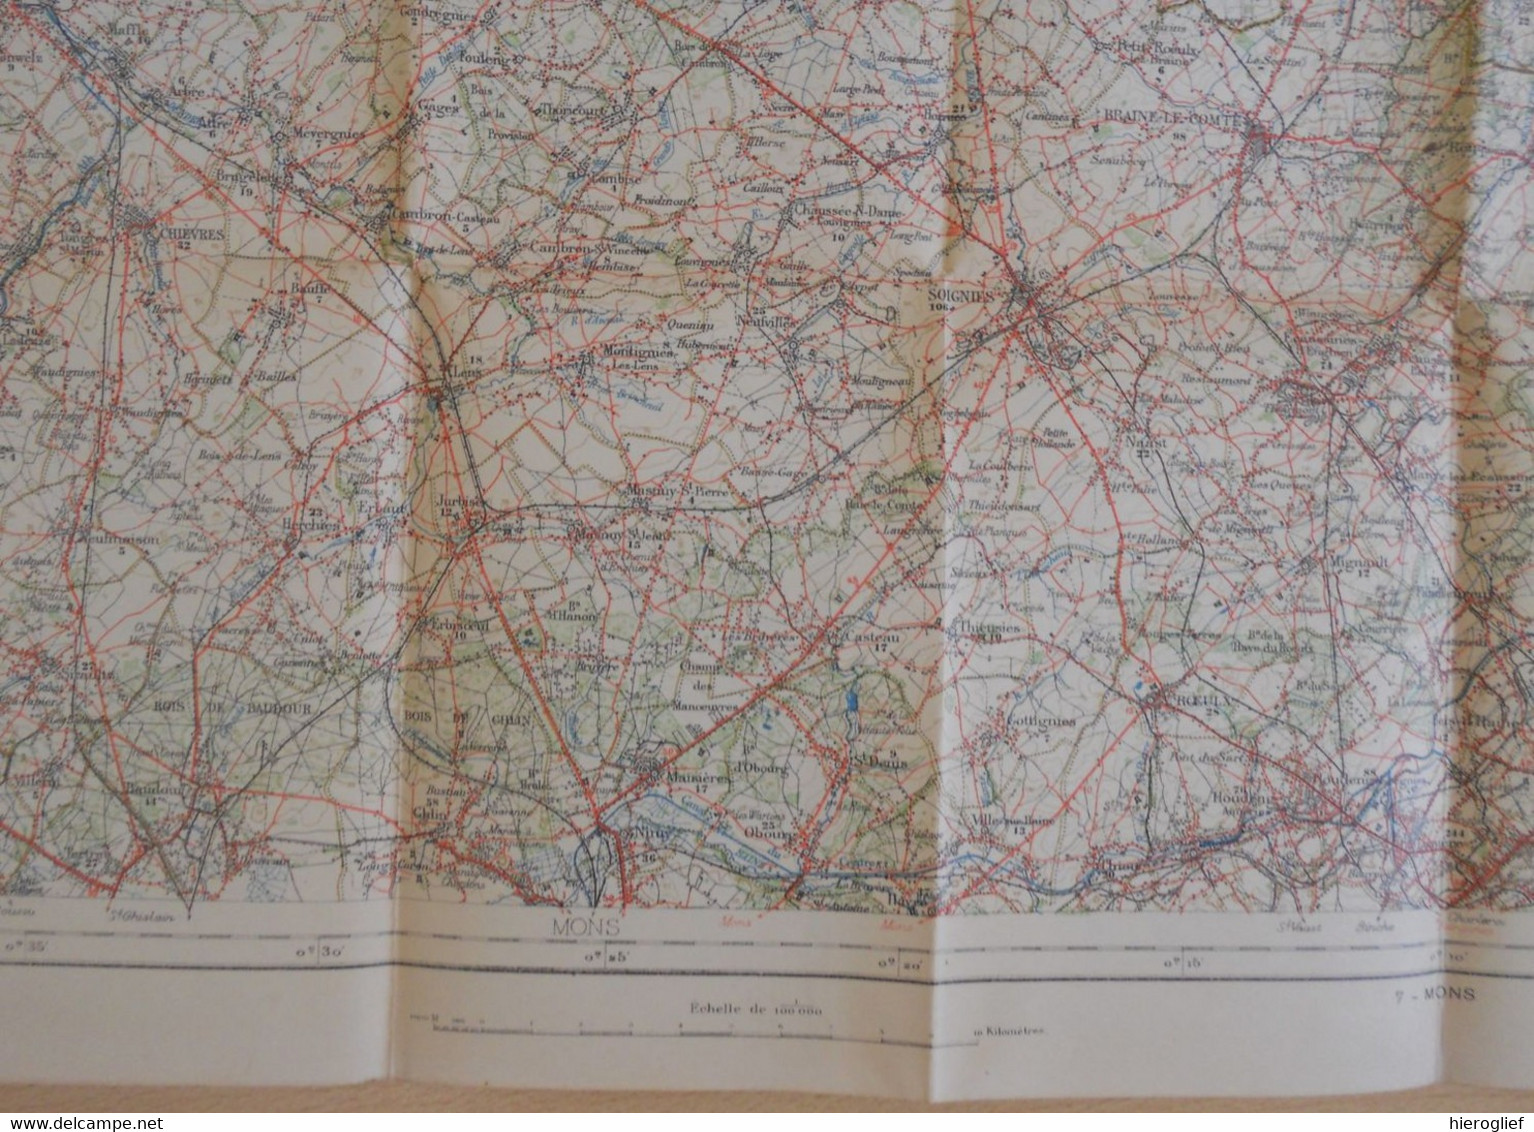 Carte De BELGIQUE Nr 5 BRUXELLES Institut Cartographique Militaire Impression Litho 1933 LEUVEN AALST NIJVEL WAVRE - Topographische Karten